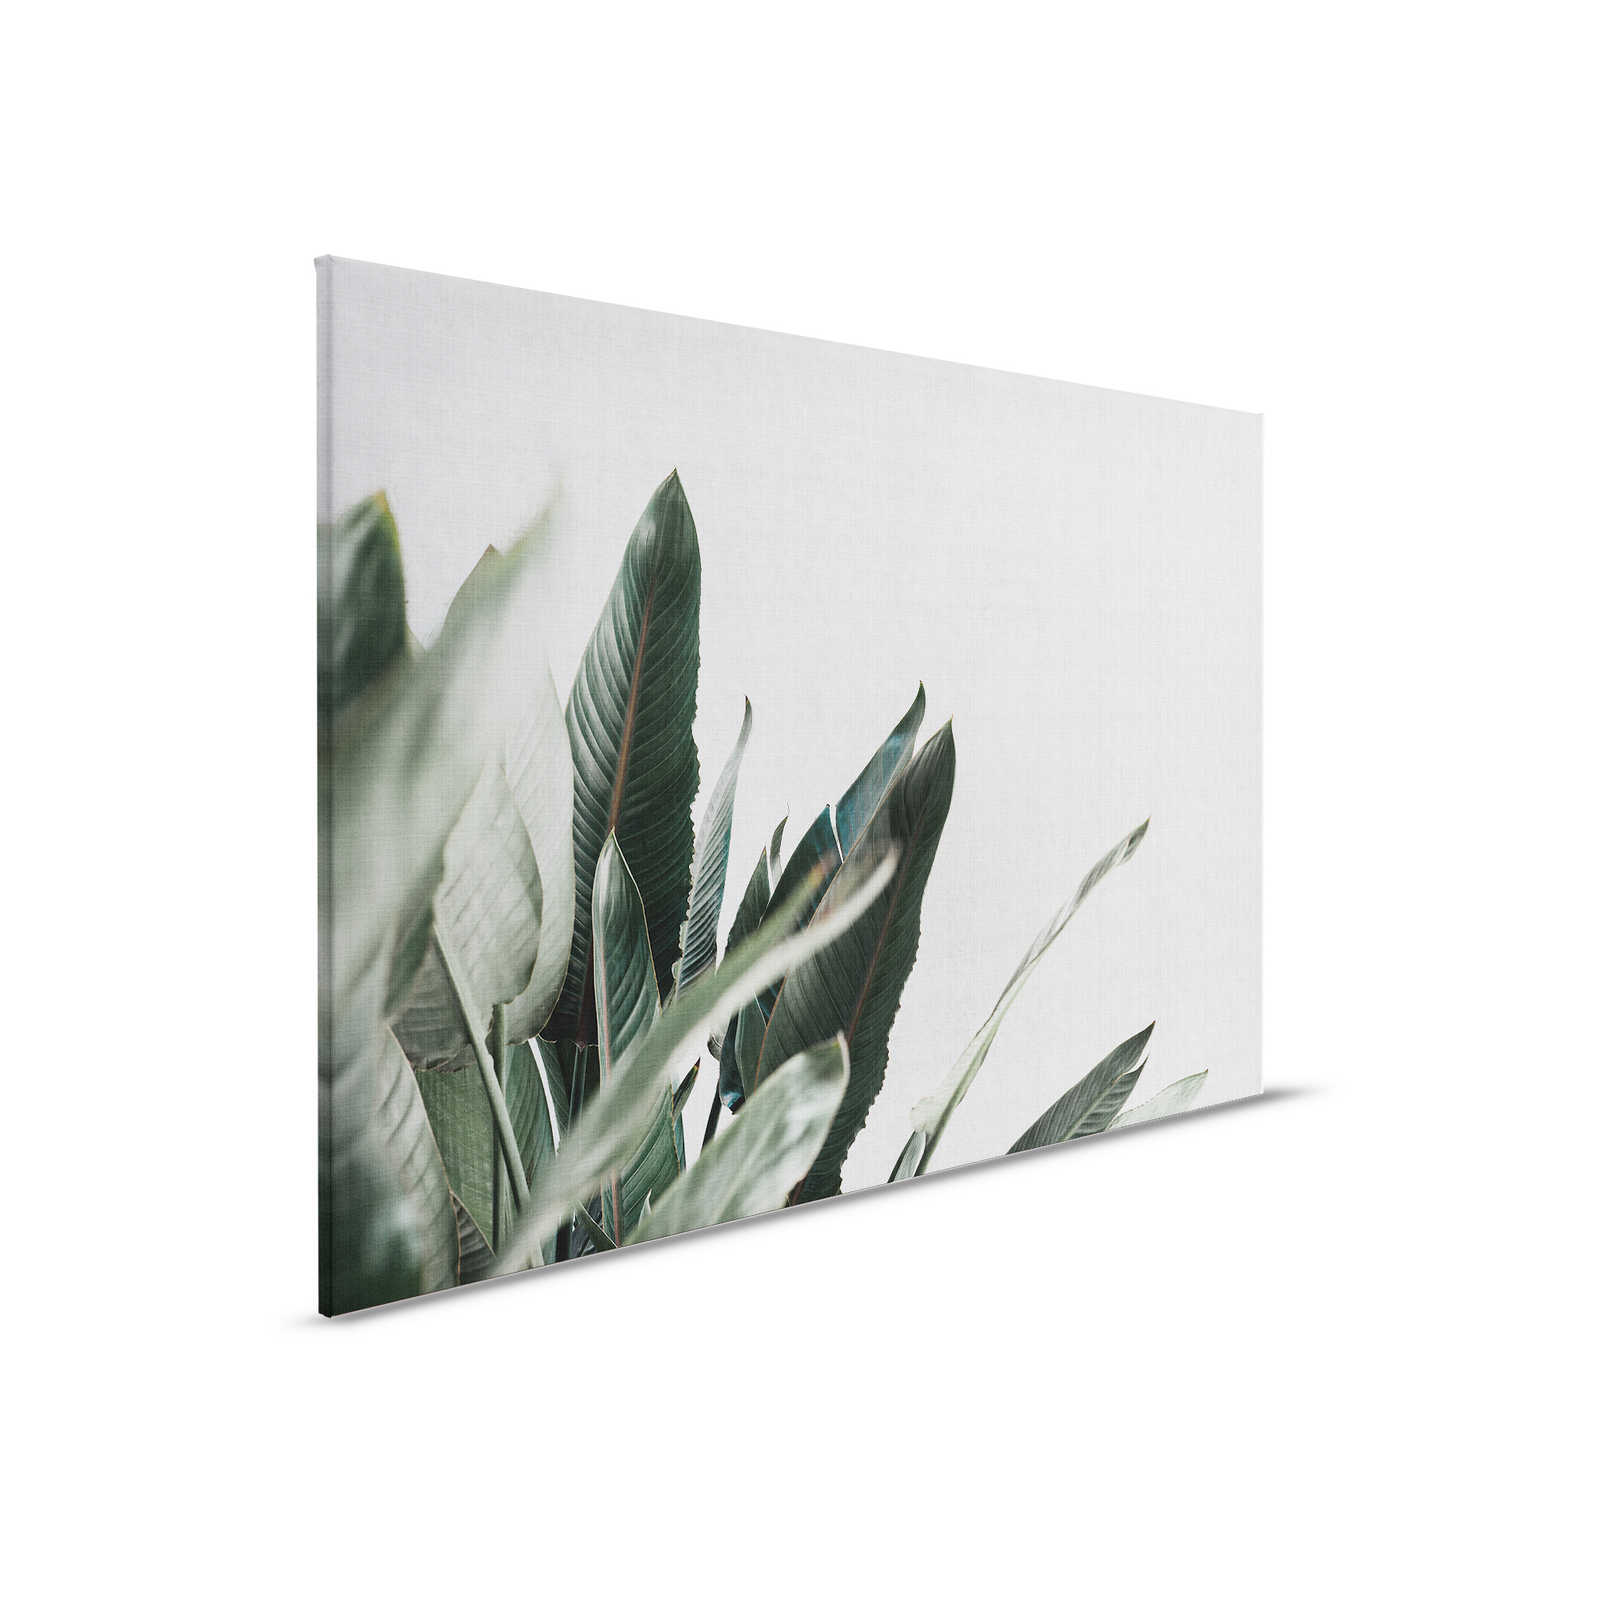 Urban jungle 1 - Canvas schilderij met palmbladeren in natuurlijke linnenlook - 0.90 m x 0.60 m
